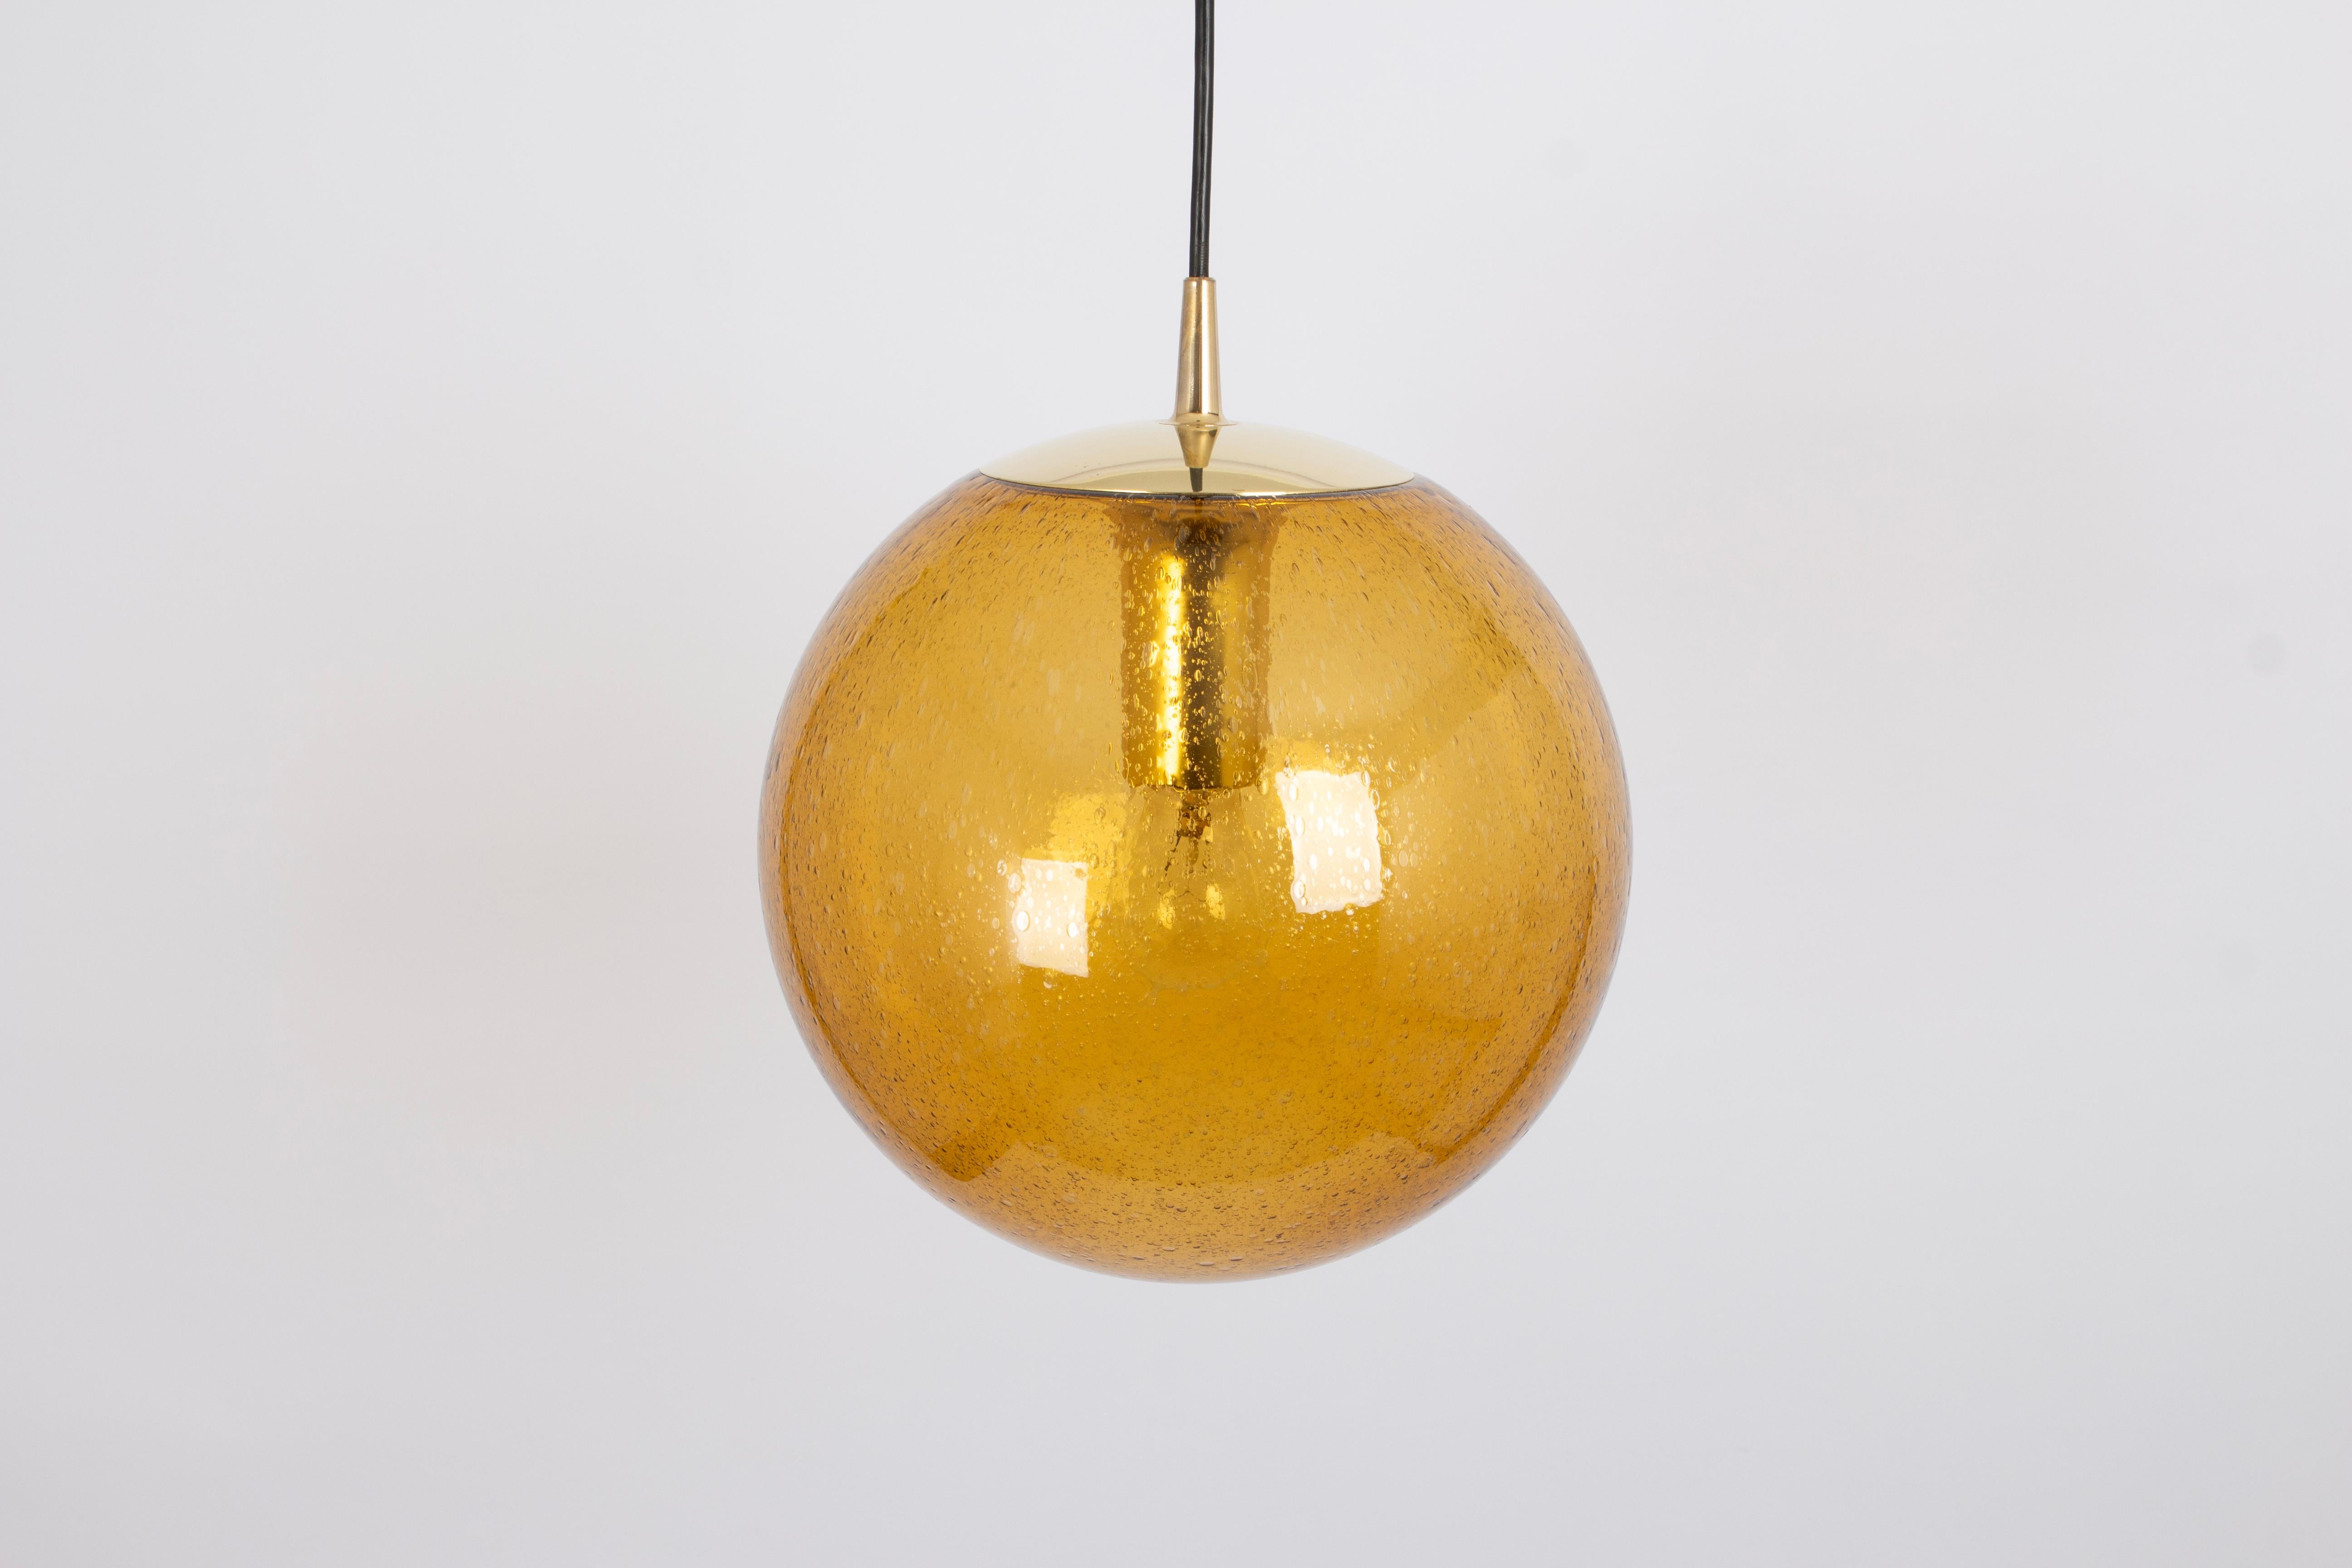 Pendentif rond spécial en verre jaune foncé conçu par Peill & Putzler, fabriqué en Allemagne, vers les années 1970.
De haute qualité et en très bon état. Nettoyé, bien câblé et prêt à l'emploi. 
Chaque luminaire nécessite une ampoule standard E27